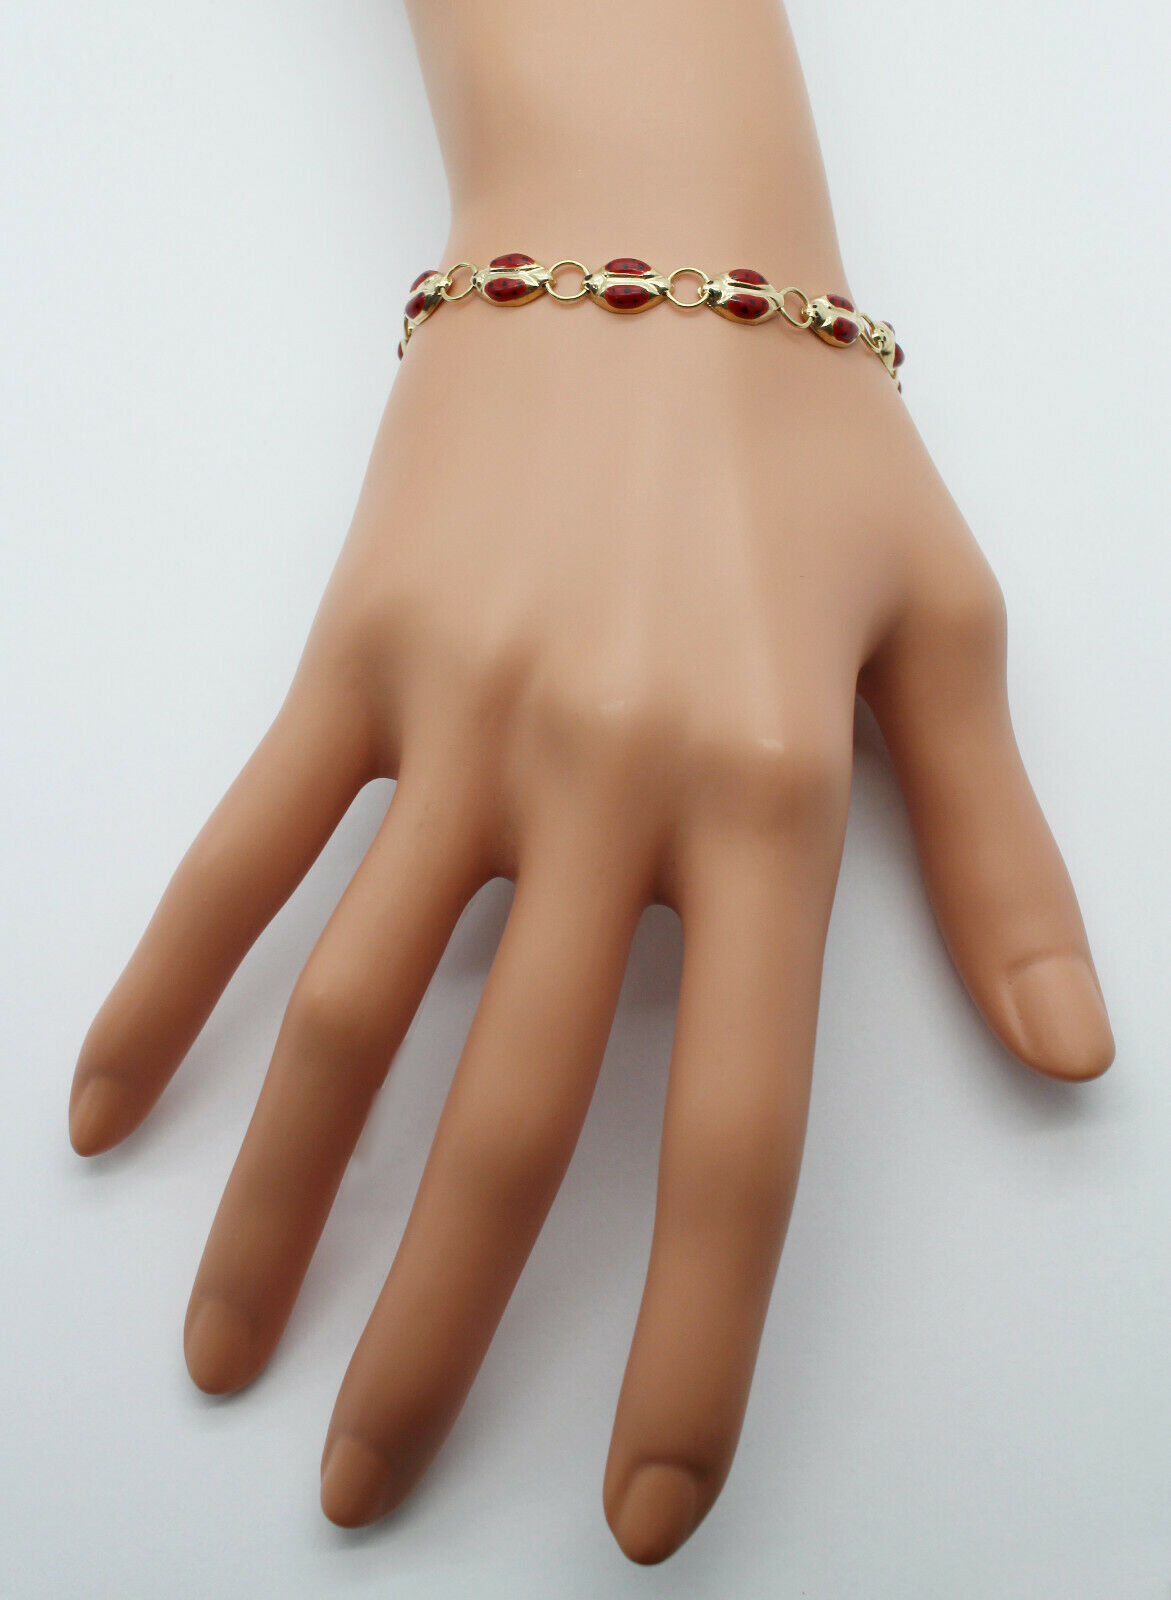 14k Yellow Gold Ladybug Enamel Bracelet, 7.5 inches - 4.6g